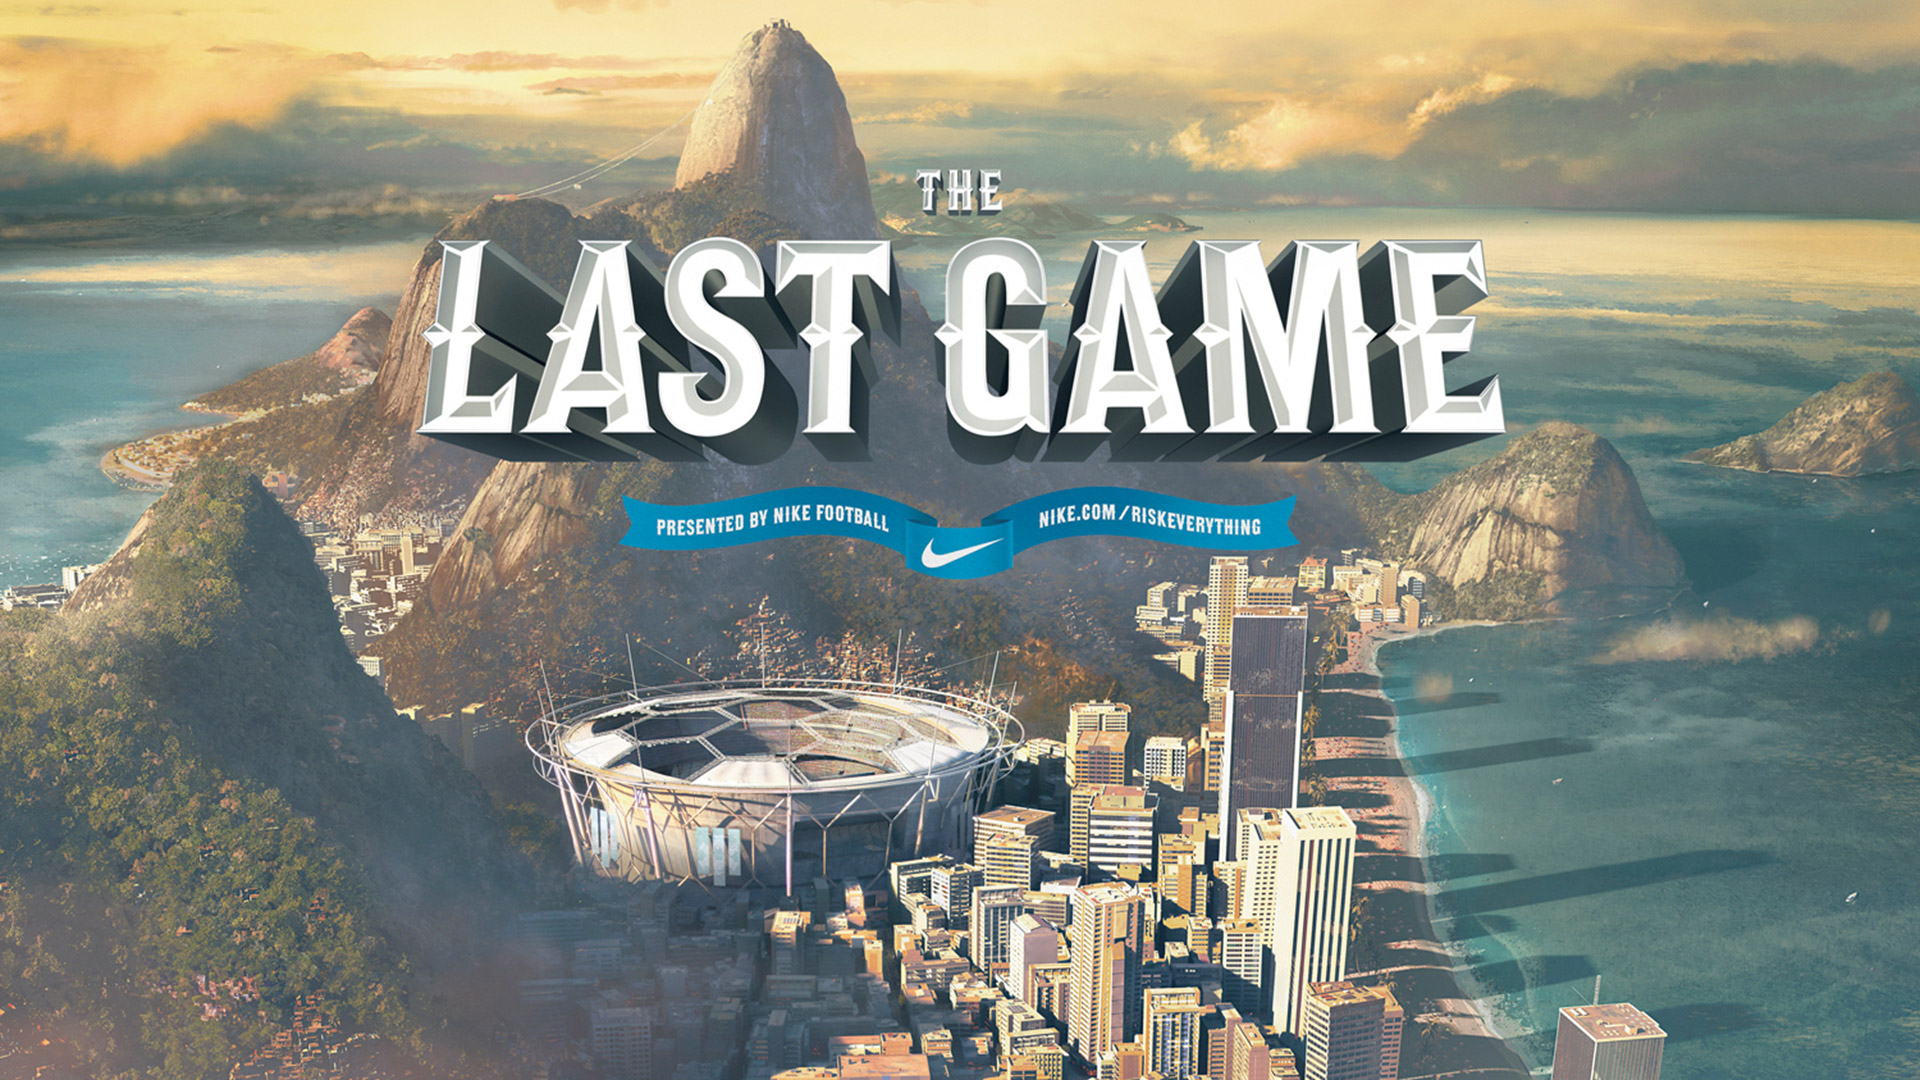 Логотип the last game. Ласт гейм. Nike risk everything. The last game. The last game s